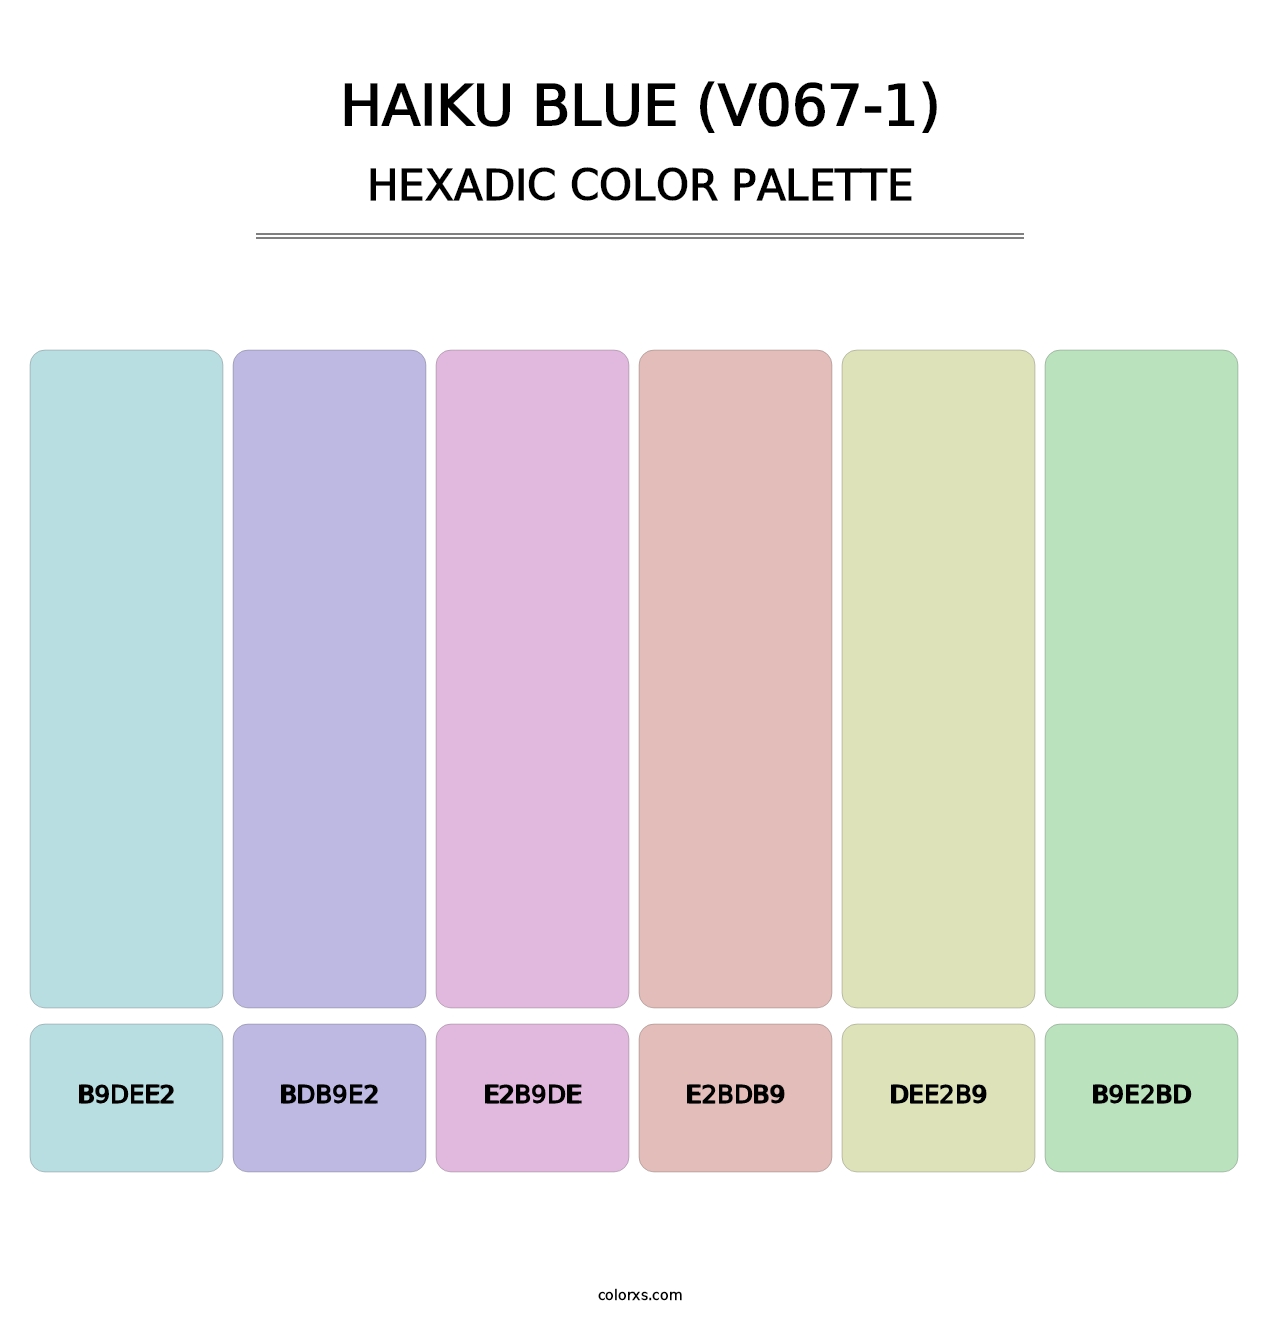 Haiku Blue (V067-1) - Hexadic Color Palette